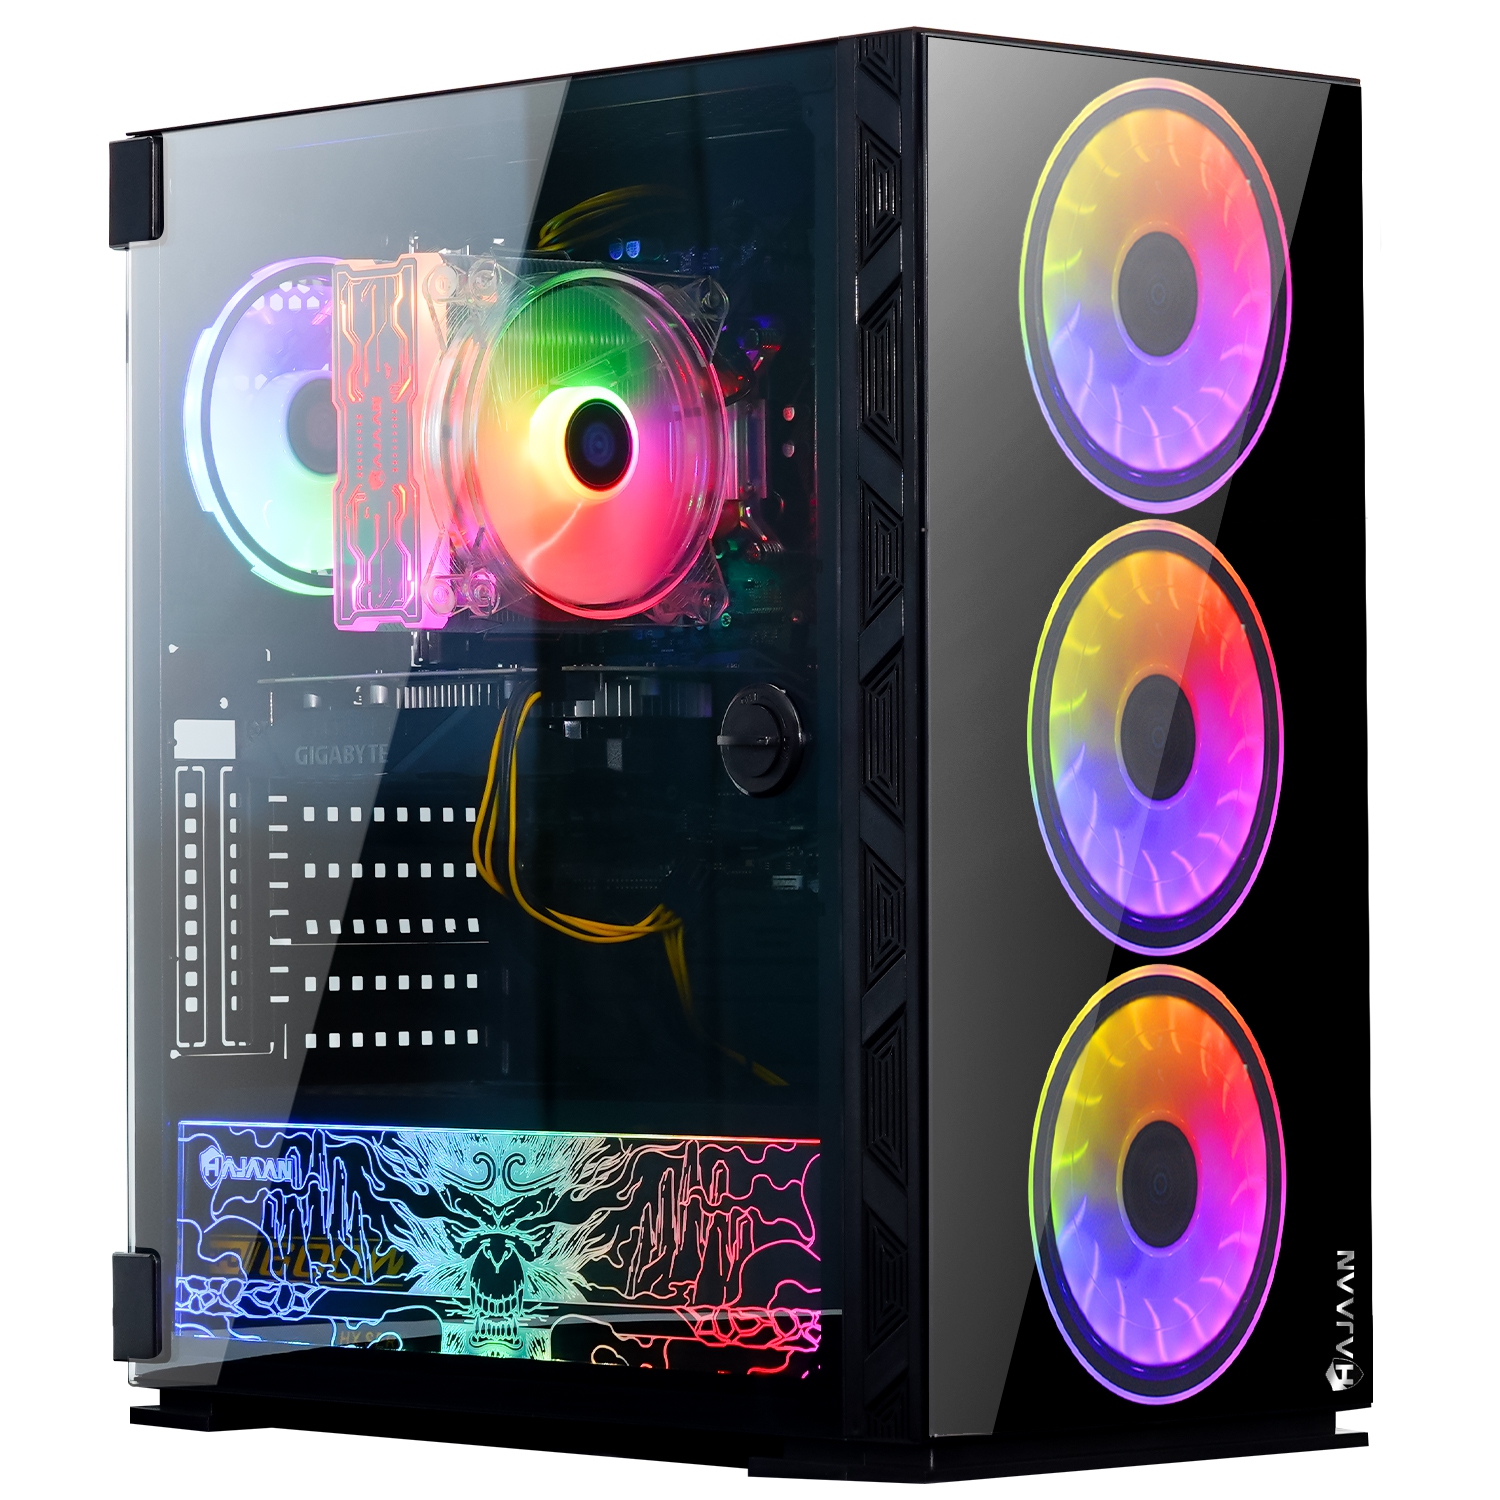 HAJAAN BREEZE PRO Gaming Desktop PC | RTX 3060 12GB GDDR6 | AMD Ryzen 7 5800X 8-Core Processor | 16GB DDR4 RAM | 512GB SSD | Windows 11 Pro | Black